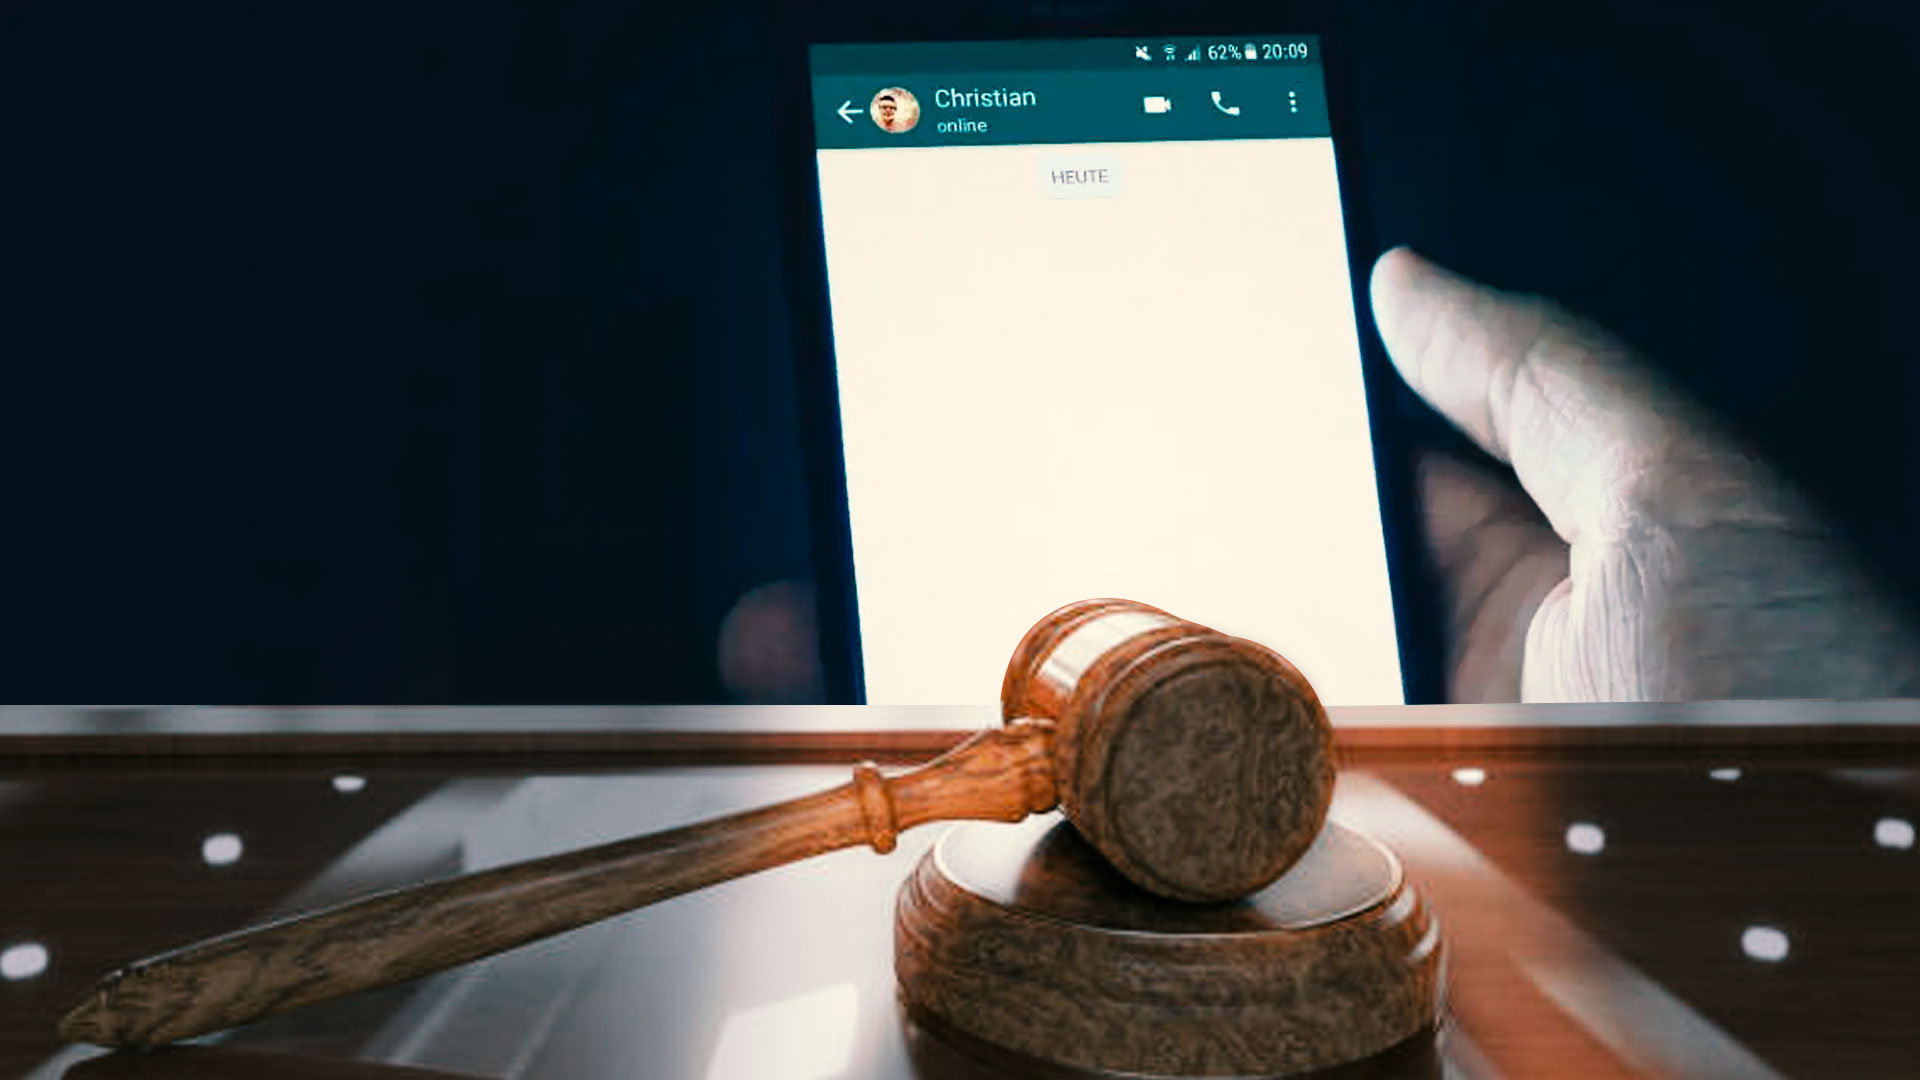 Mensajes de WhatsApp sirven como prueba en un juicio, según Comisión Nacional de Disciplina Judicial 